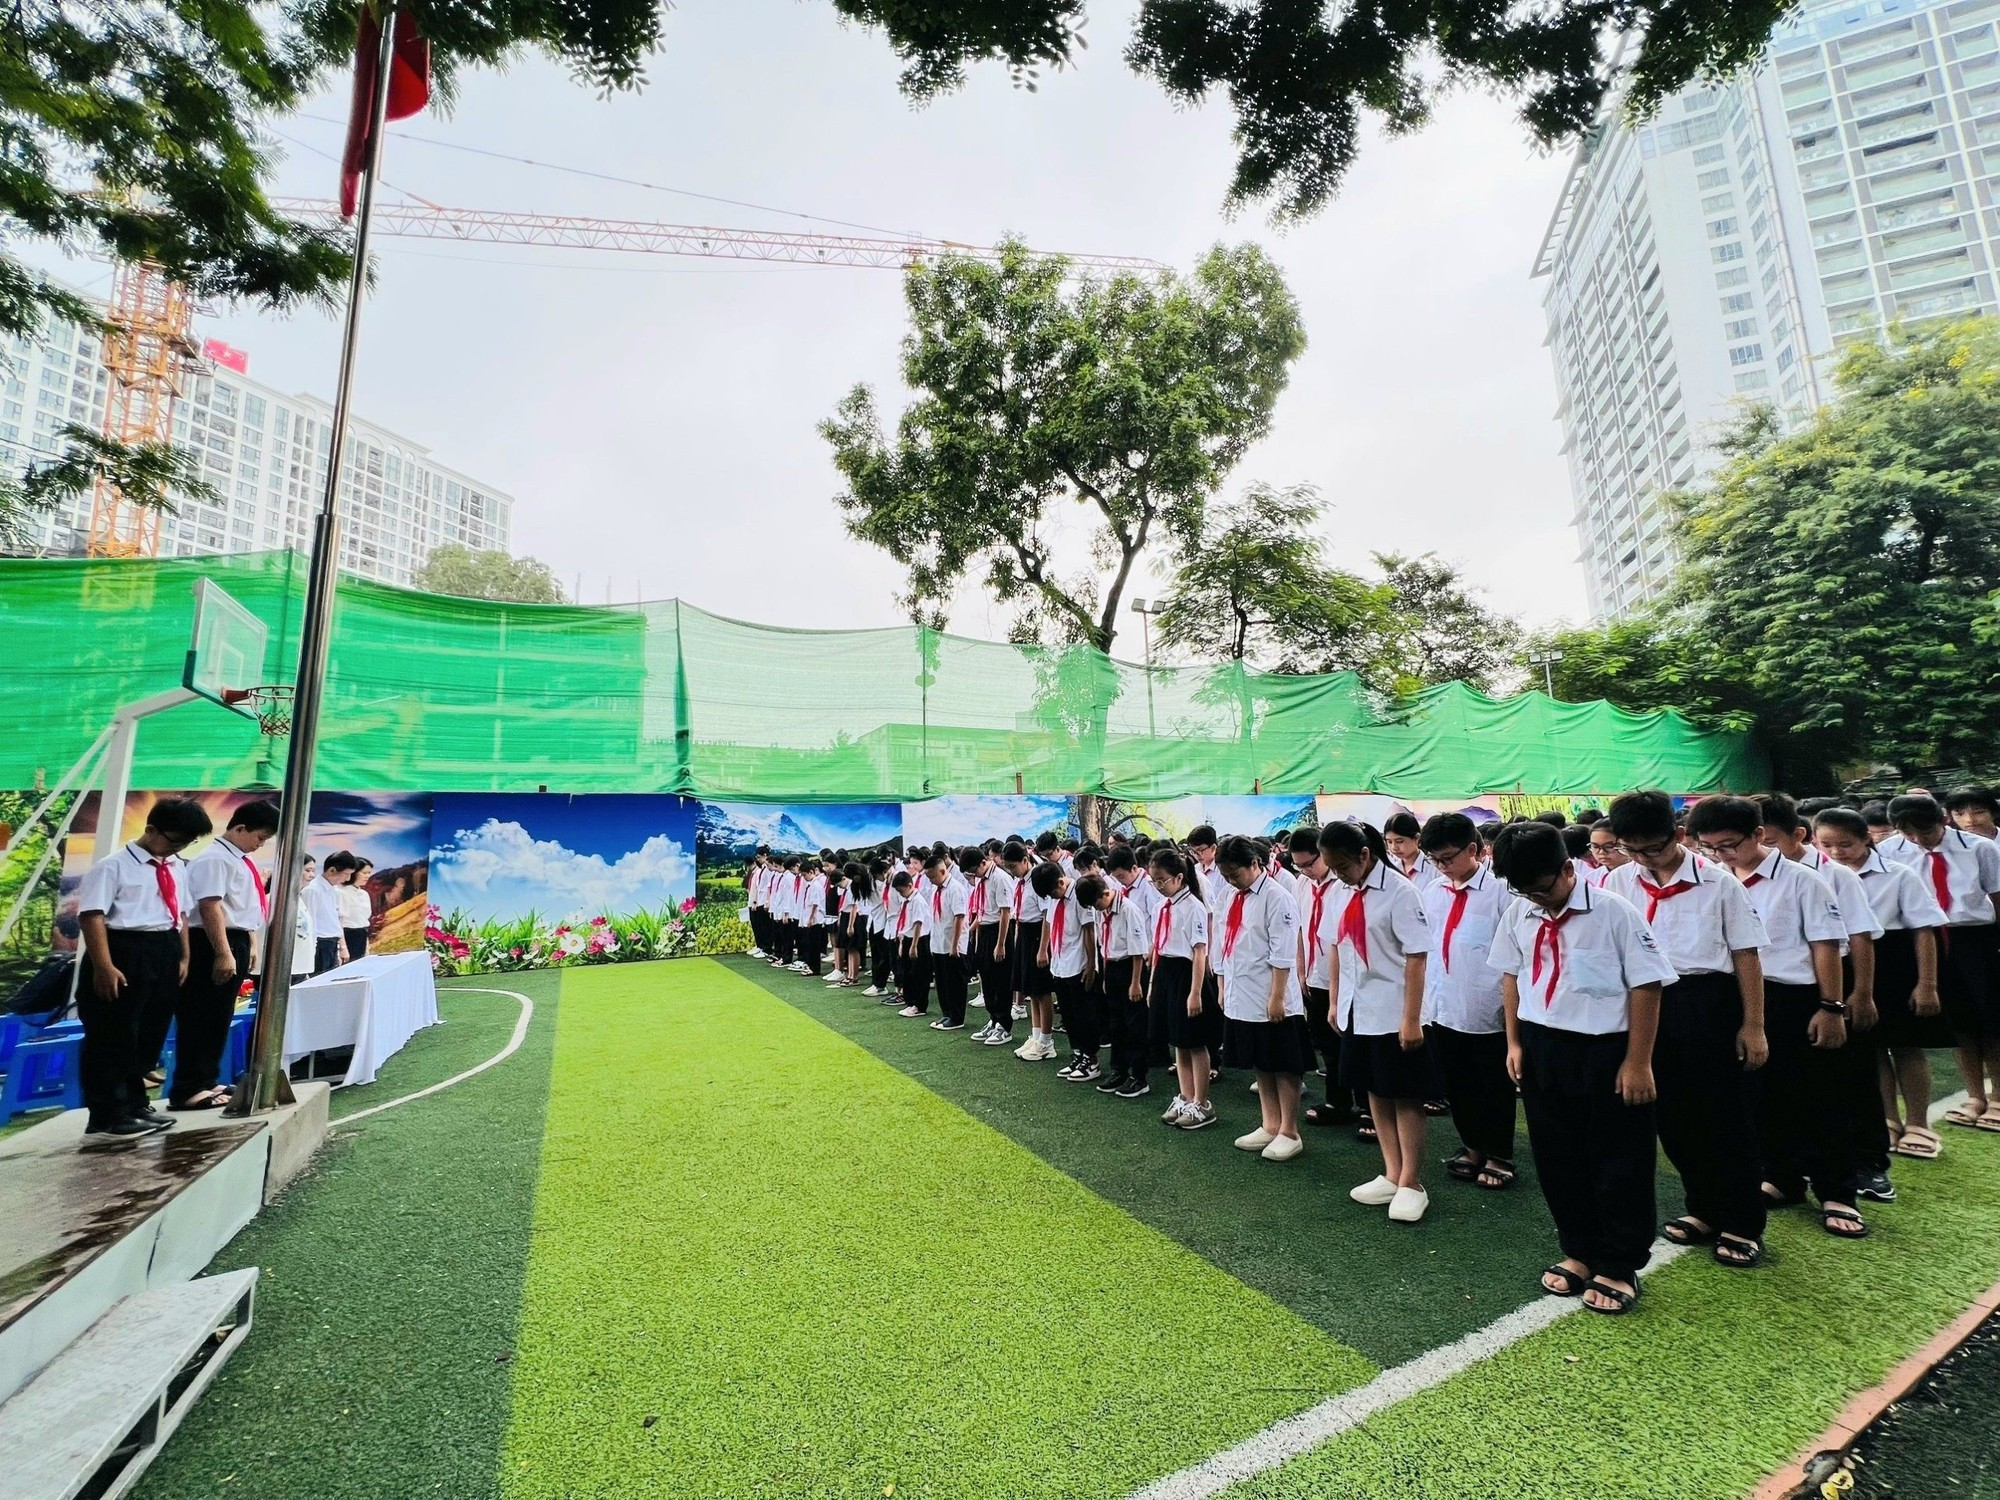 Hàng vạn học sinh, giáo viên quận Ba Đình quên góp ủng hộ các gia đình nạn nhân trong vụ cháy - Ảnh 2.